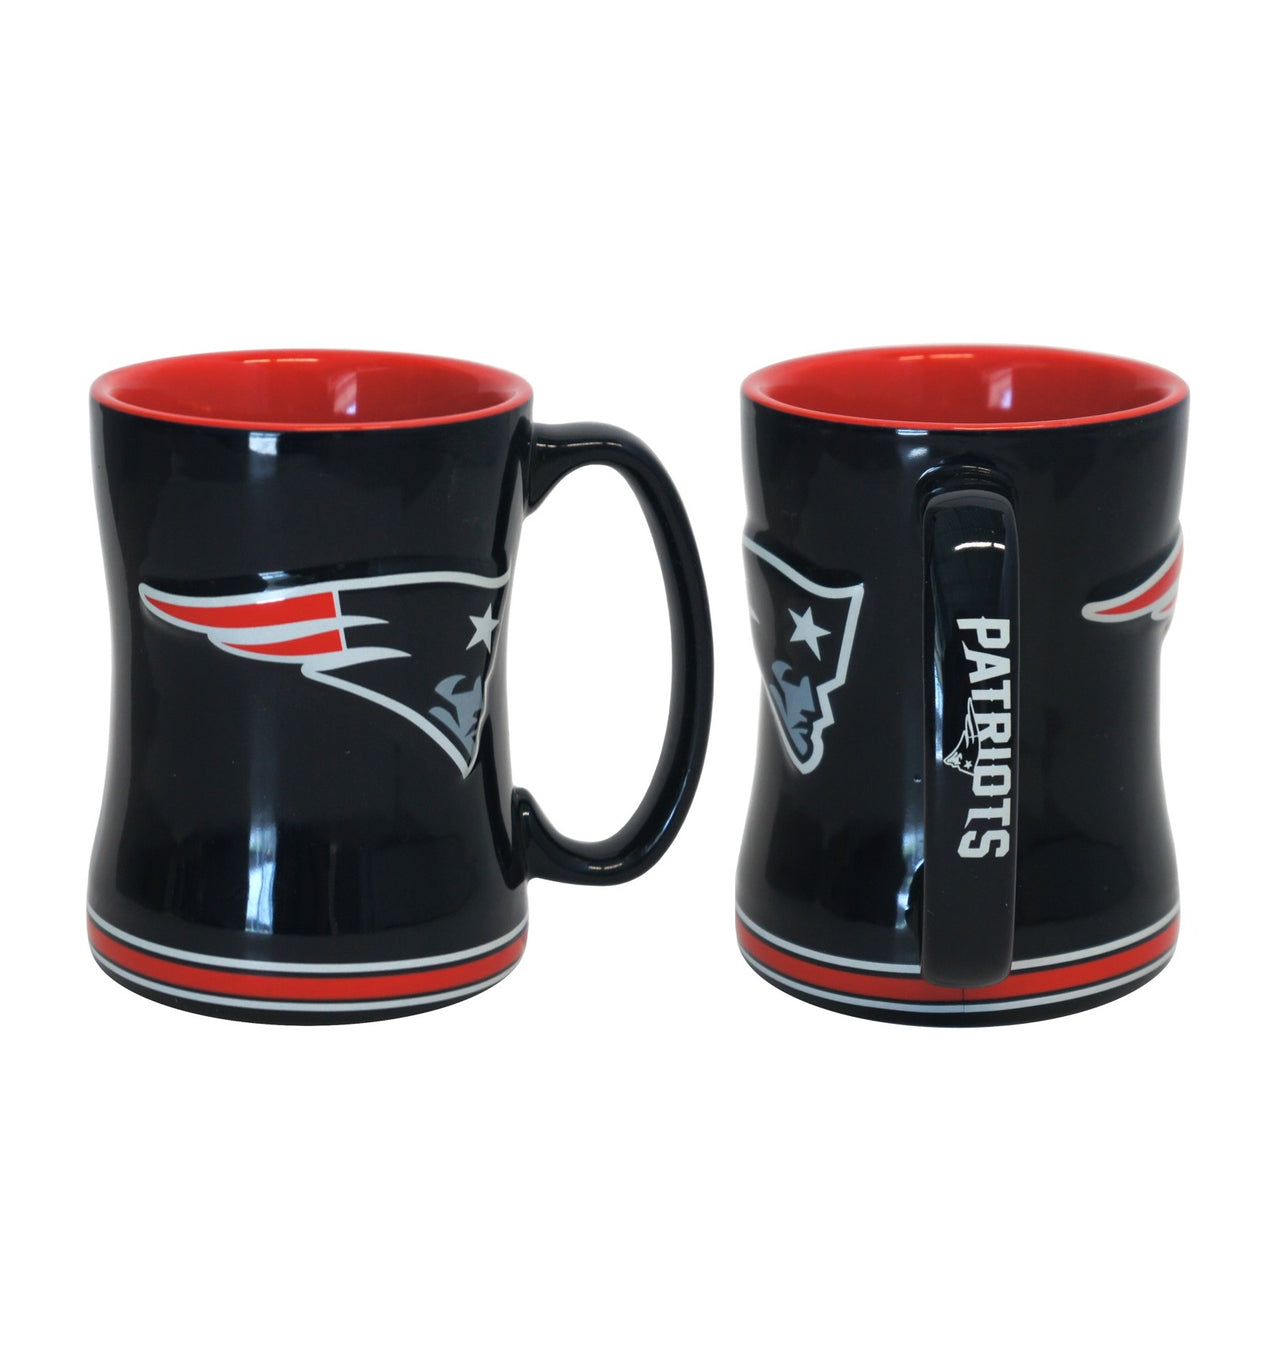 New England Patriots 14oz. Ceramic Mug with Matching Box